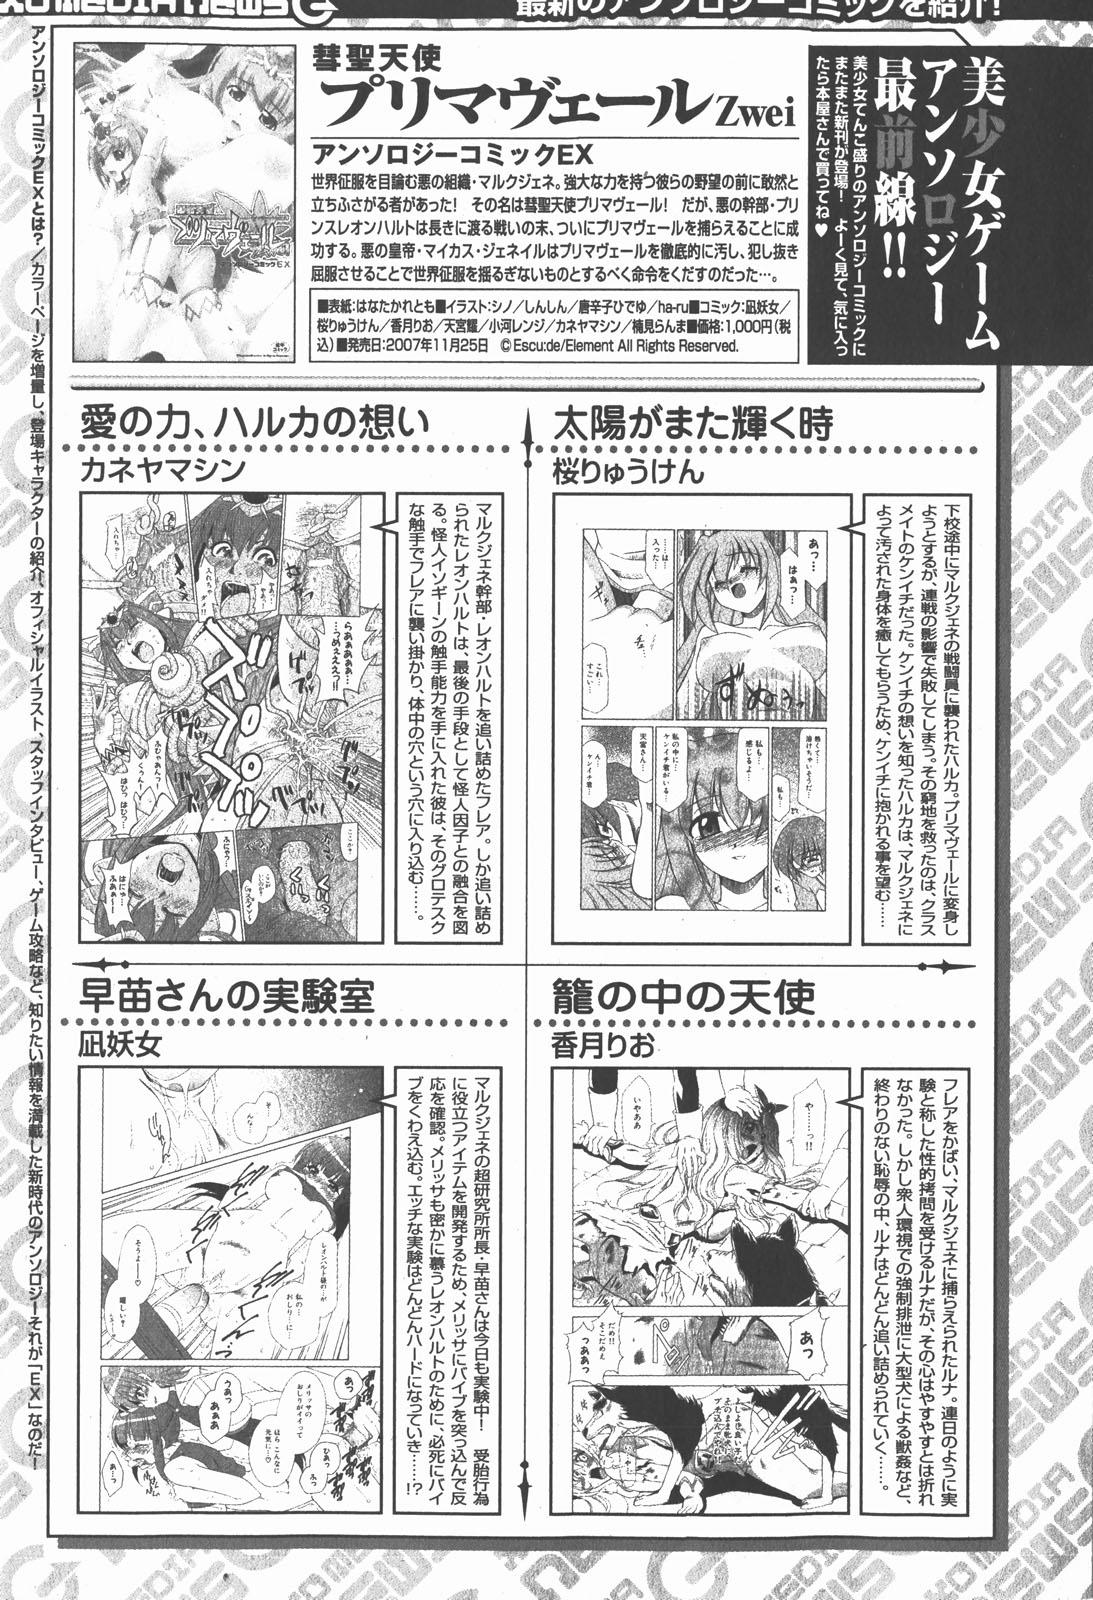 COMIC XO 2007-12 Vol. 19 144